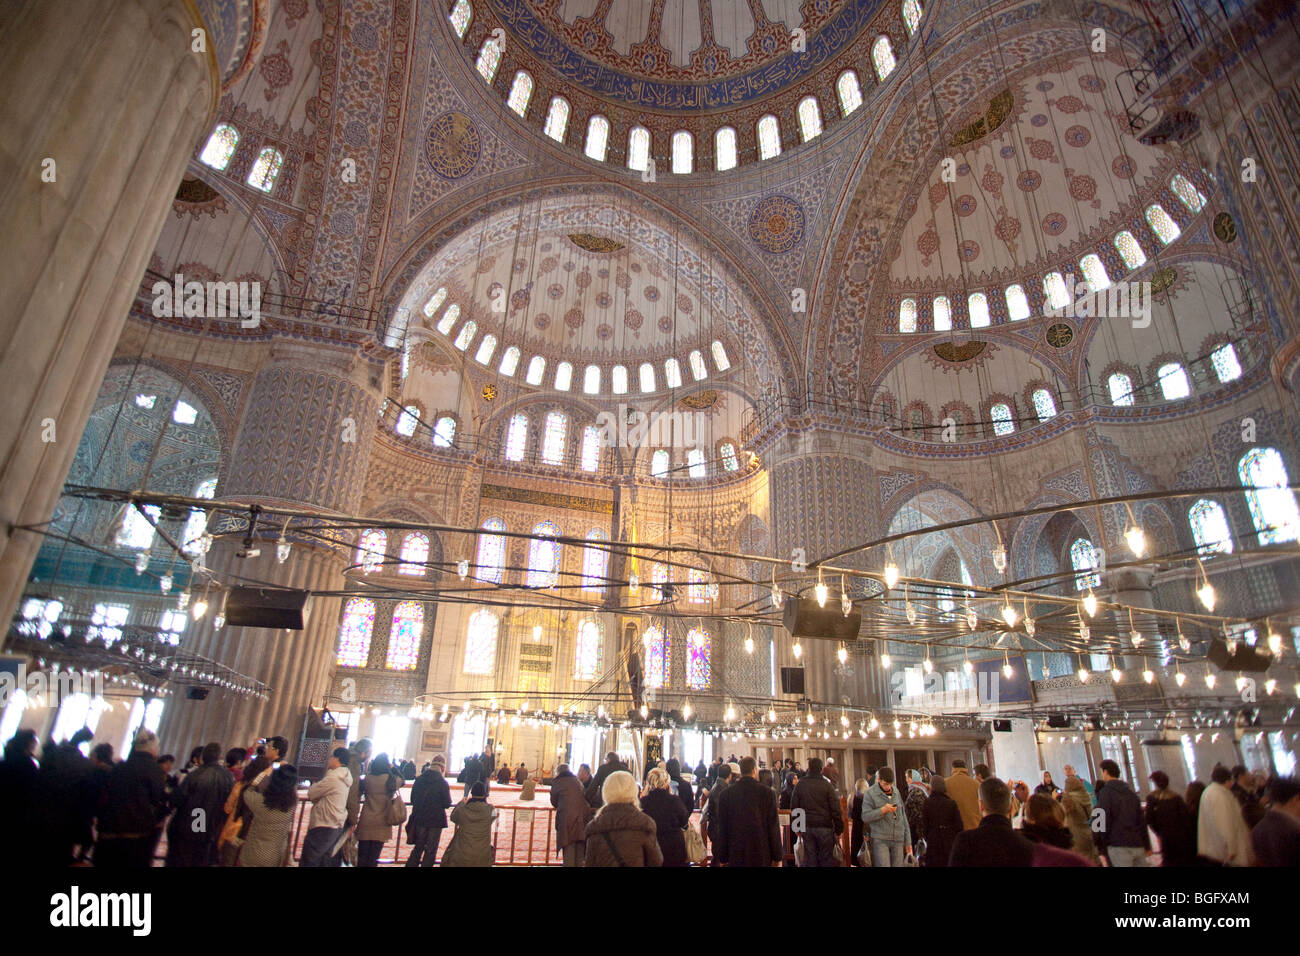 Mosquée Bleue Sultan Ahmet, l'intérieur de la Mosquée de Sultanahmet d'Istanbul, Turquie Banque D'Images